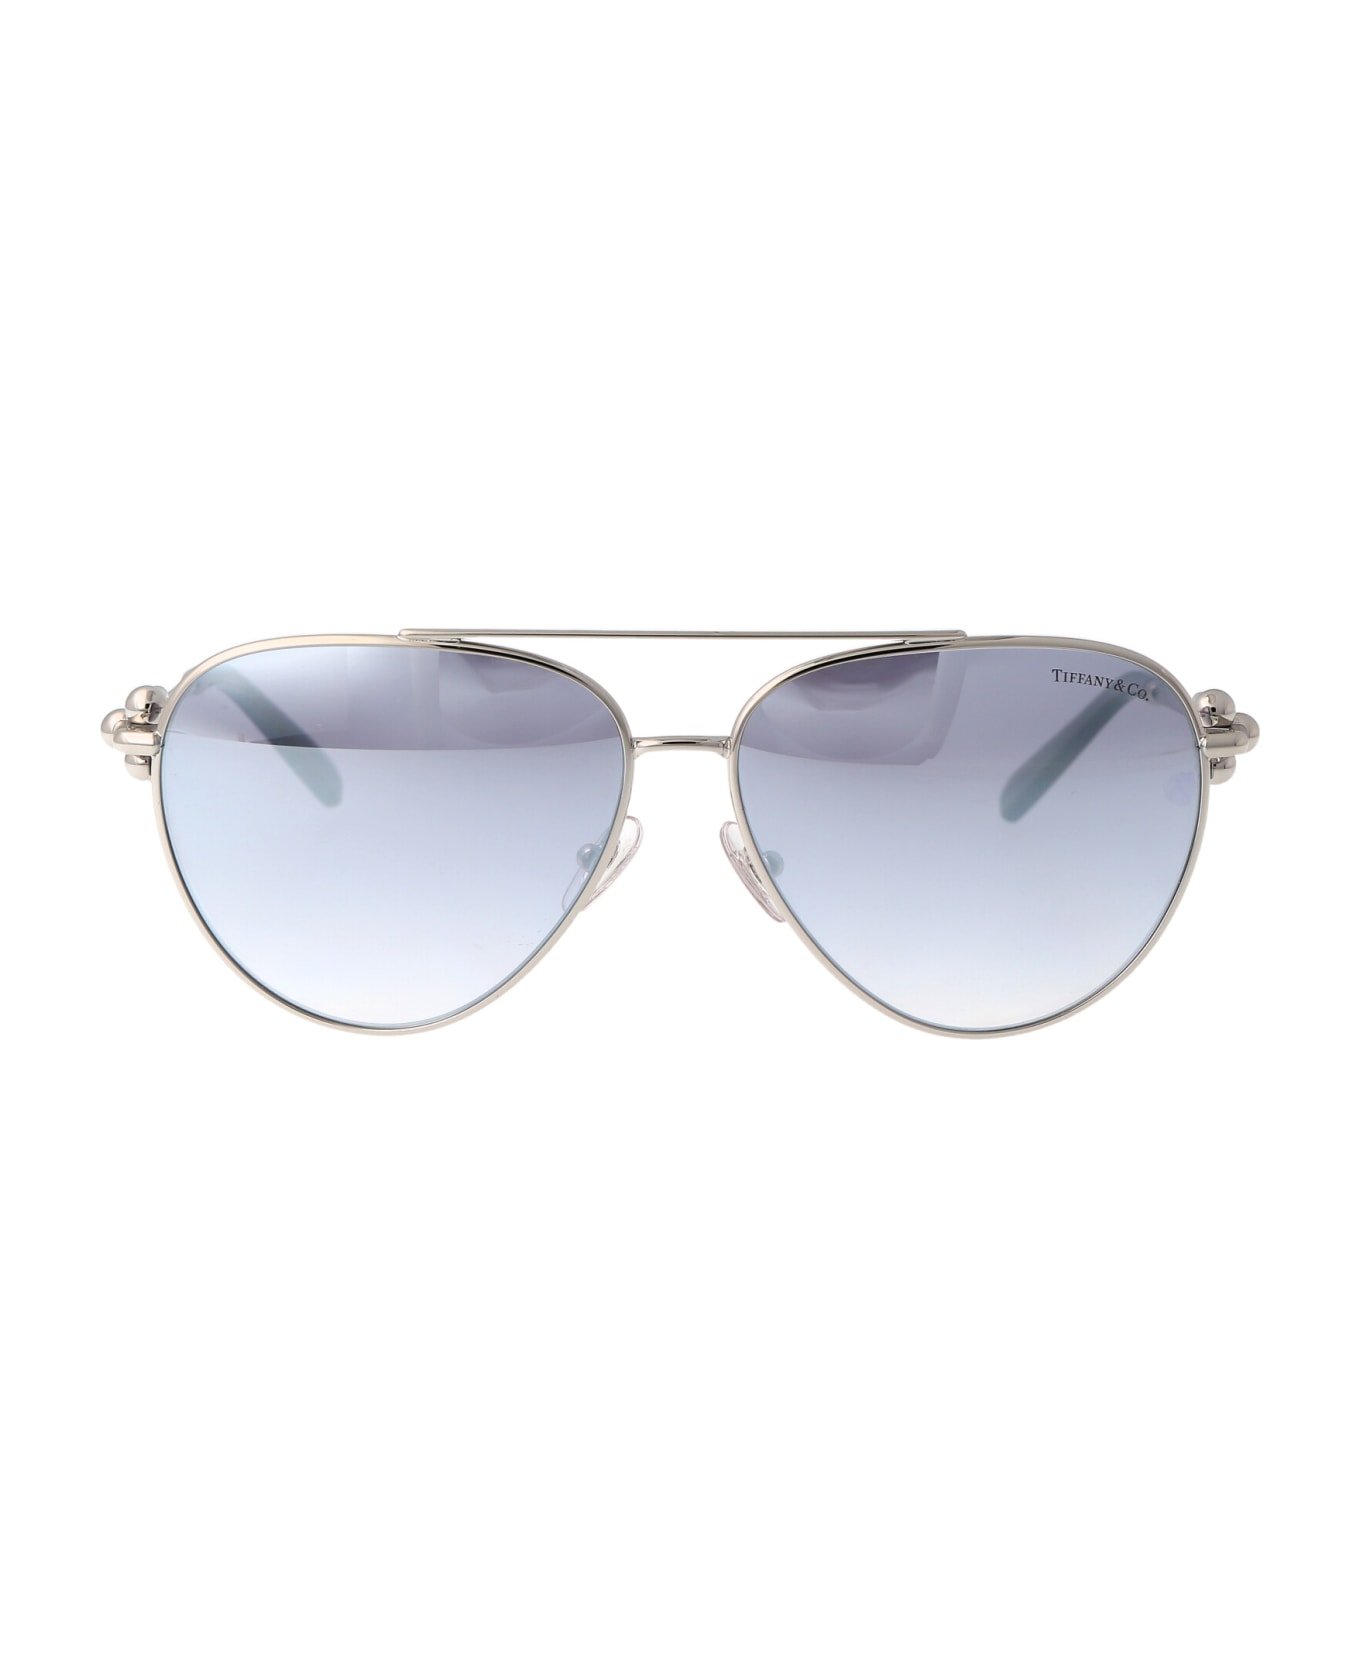 Tiffany & Co. 0tf3092 Sunglasses - 6175V6 Silver サングラス